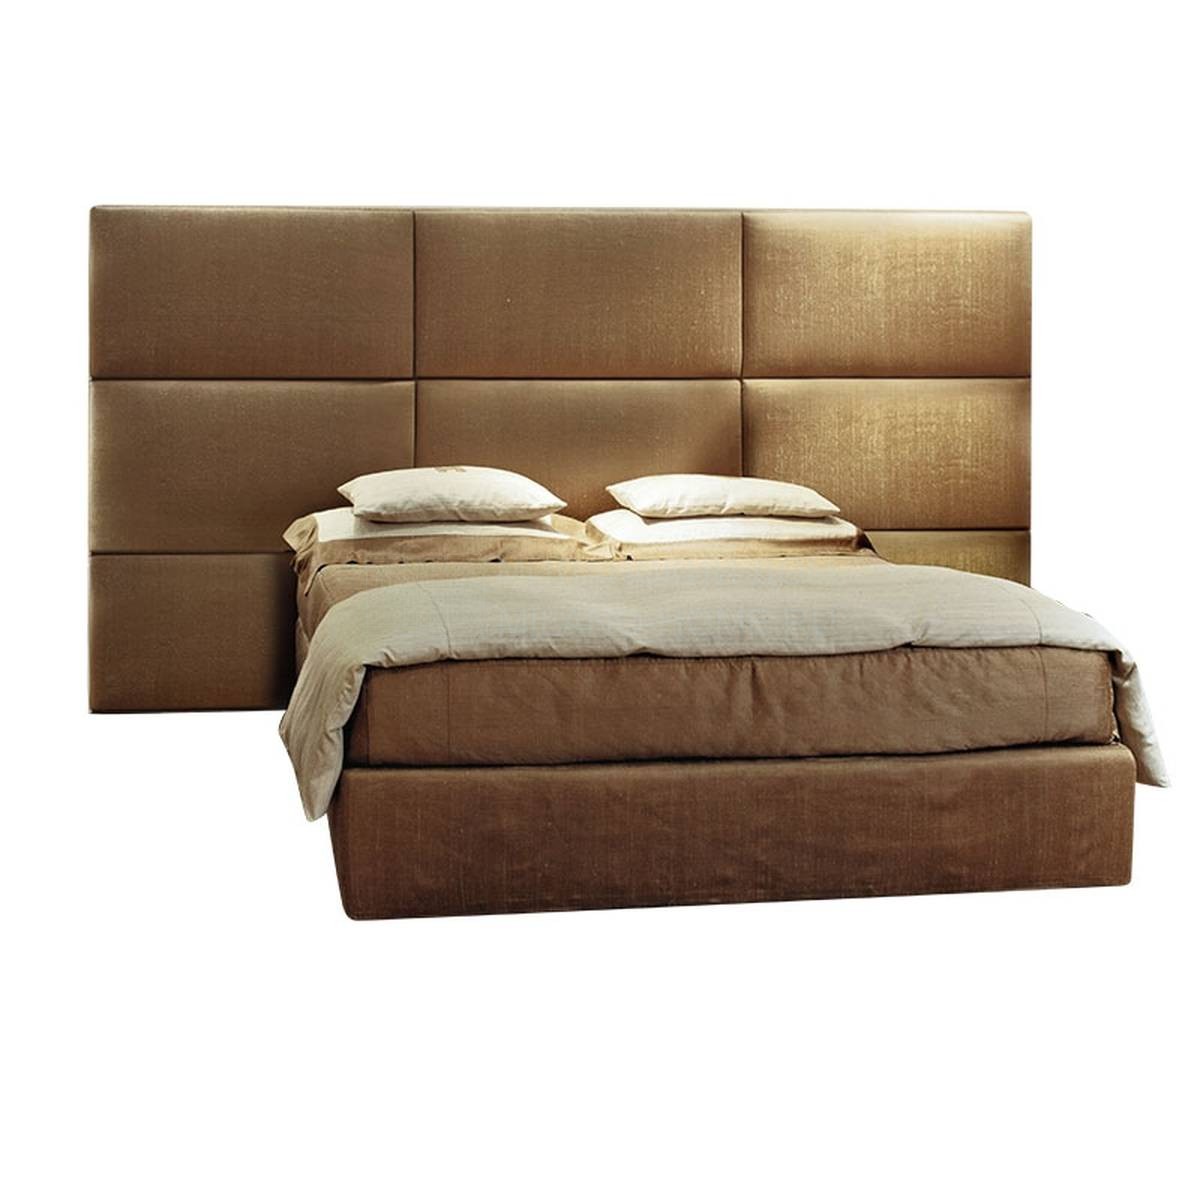 Кровать с мягким изголовьем Fumodilondra / bed из Италии фабрики SOFTHOUSE